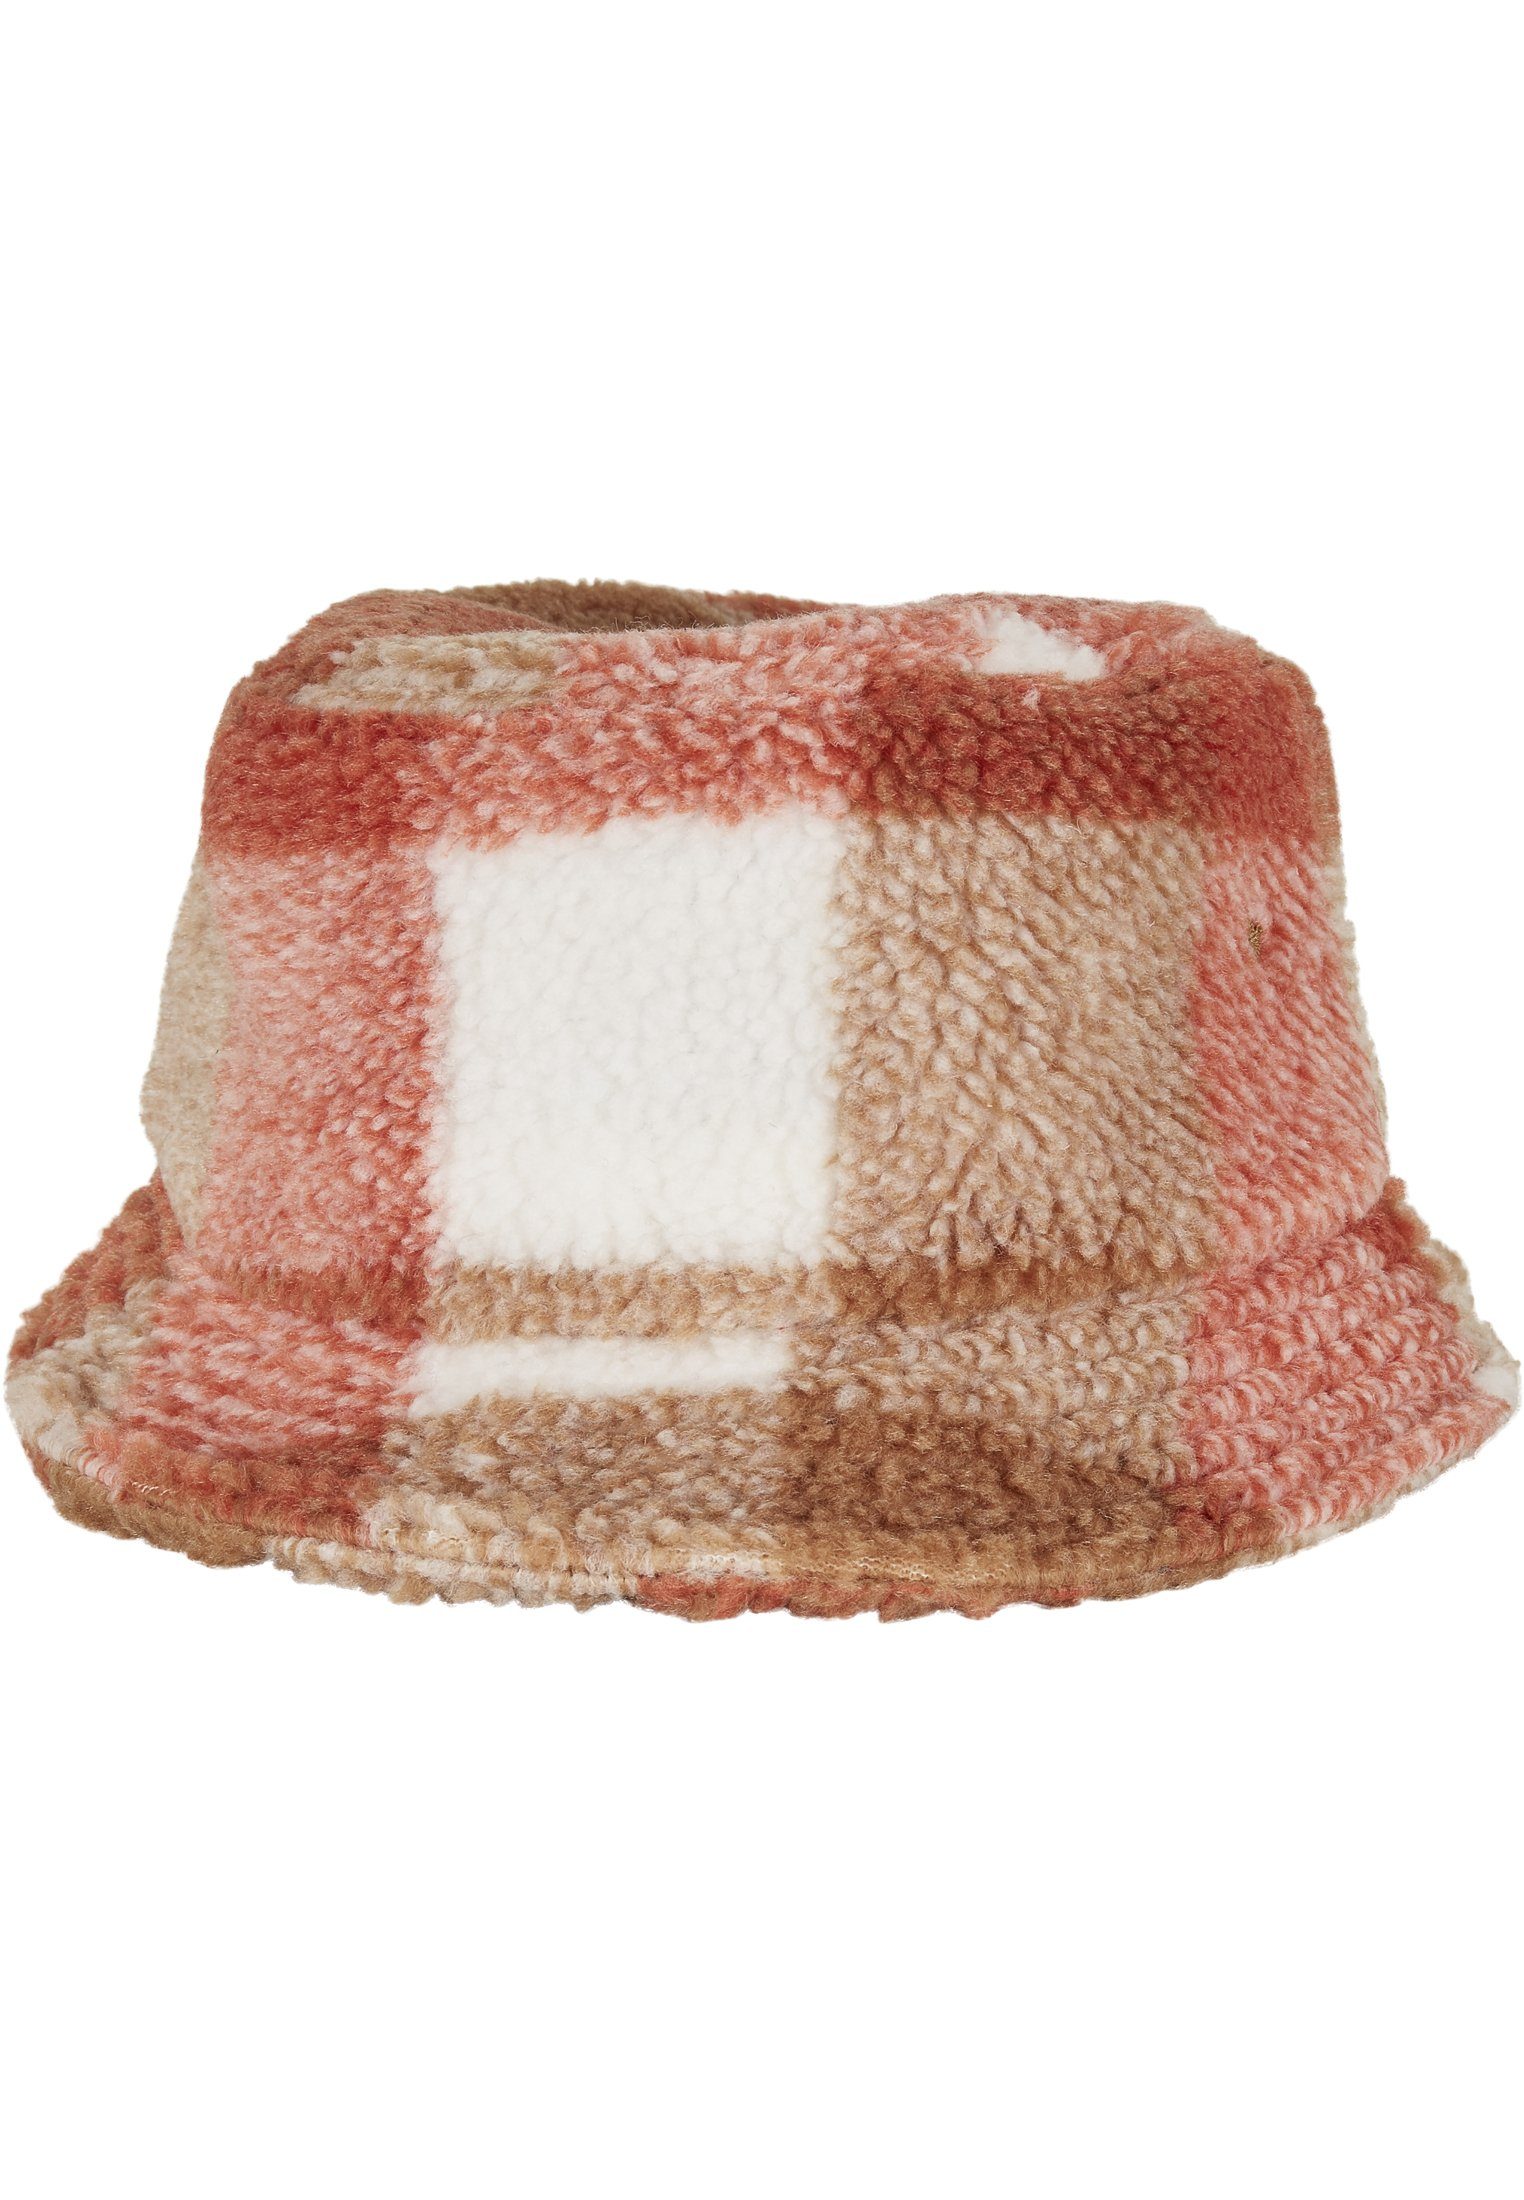 Flexfit Flex Hat Cap Hat Bucket whitesand/toffee Bucket Sherpa Check